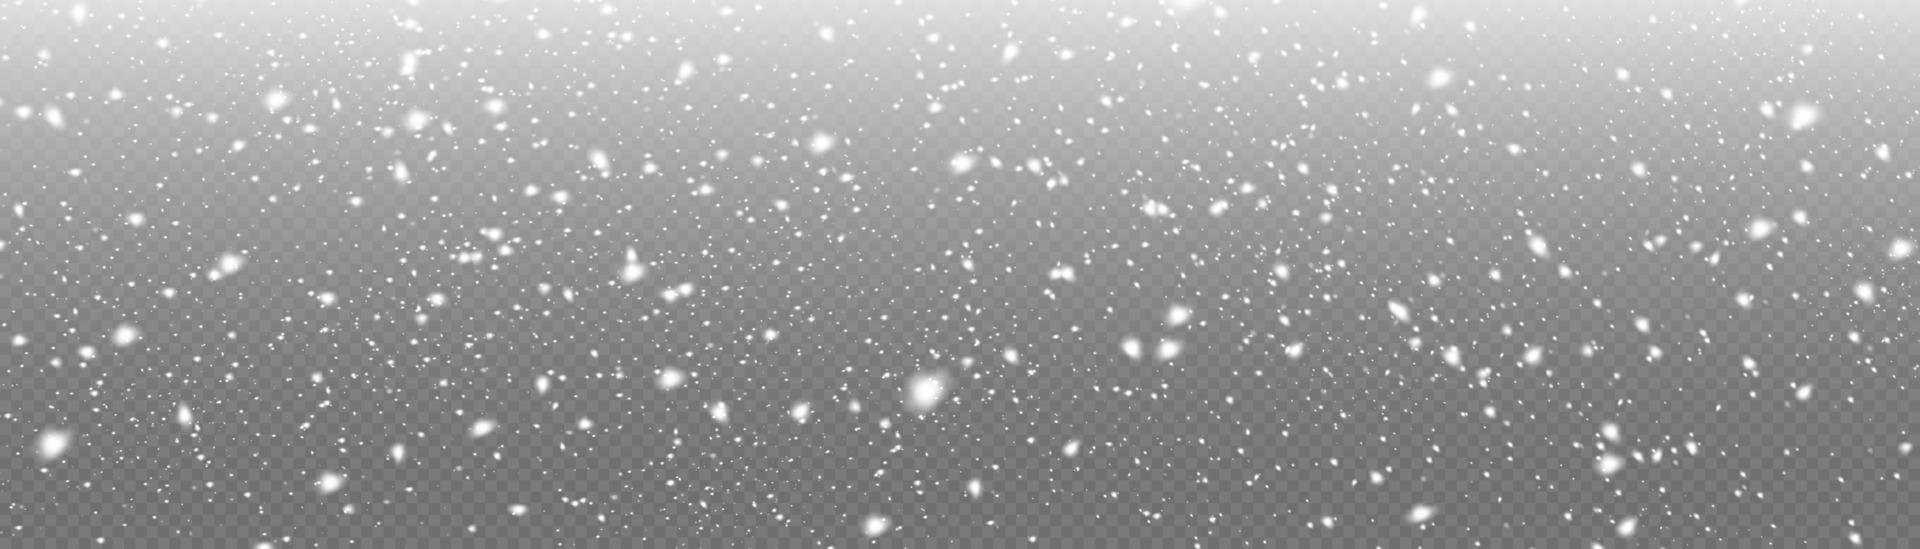 wit sneeuwvlokken zijn vliegend in de lucht. sneeuw achtergrond. sneeuw en wind. vector zwaar sneeuwval, sneeuwvlokken in divers vormen en vormen.